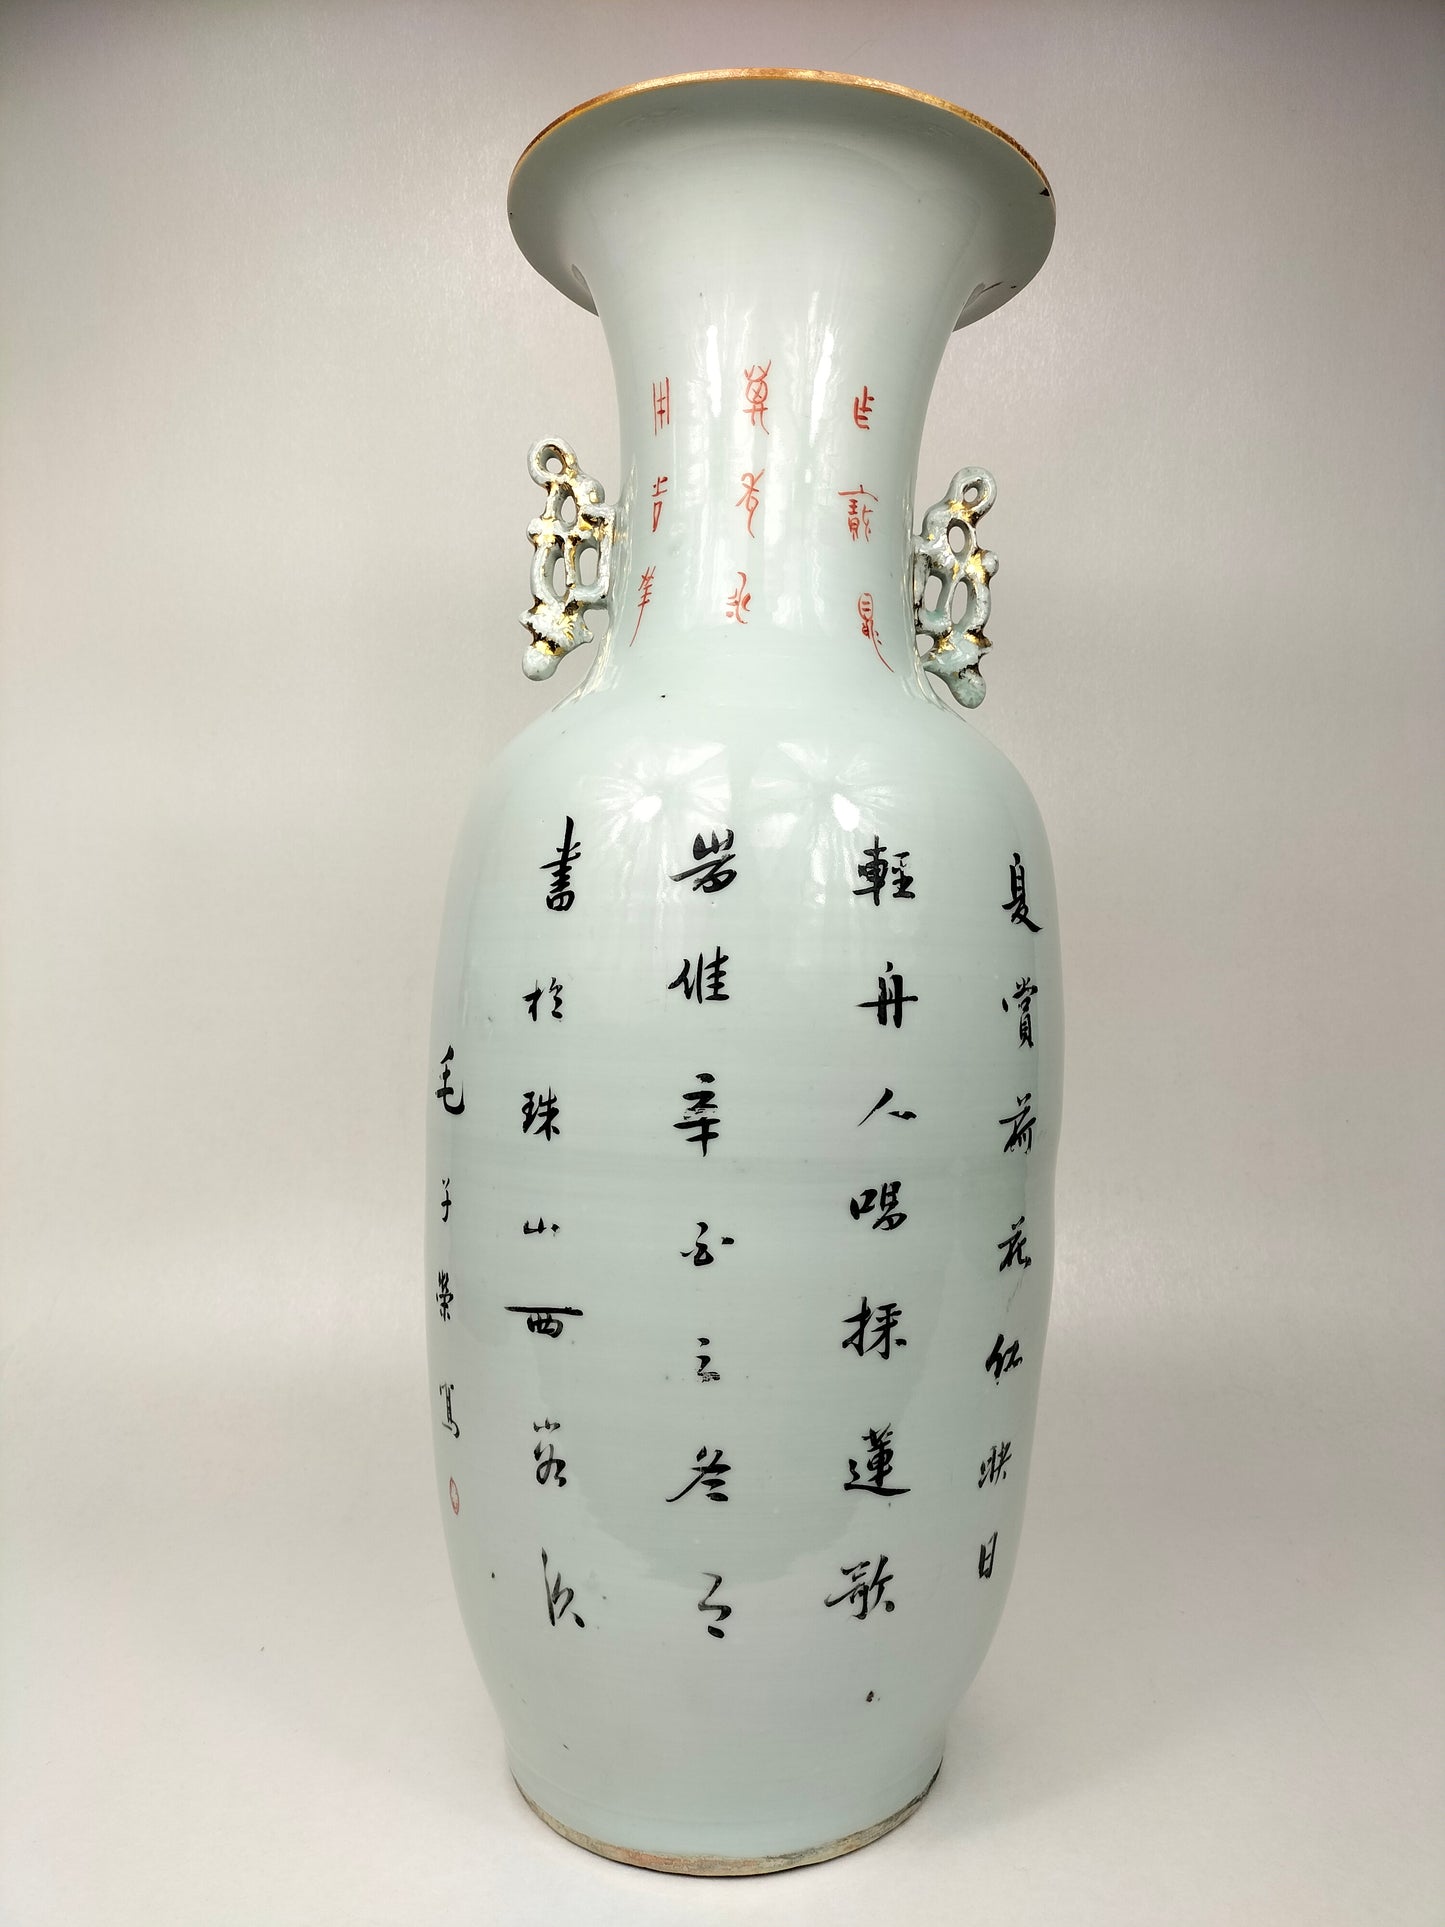 Chiếc bình cổ lớn của Trung Quốc được trang trí với khung cảnh Hoàng gia // Thời kỳ Cộng hòa (1912-1949)